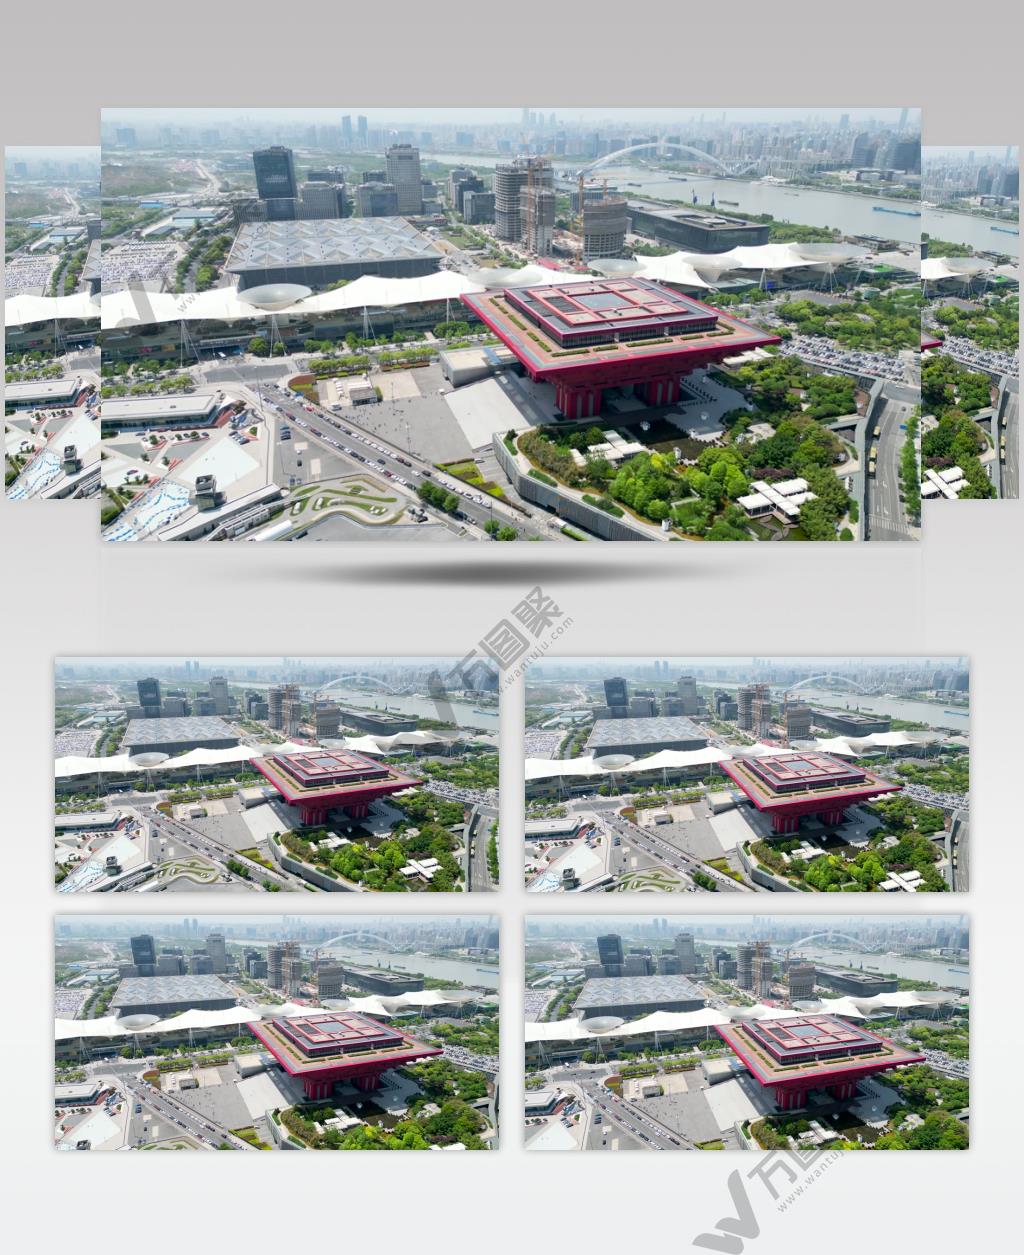 【4K60帧】上海世博园中华艺术宫航拍